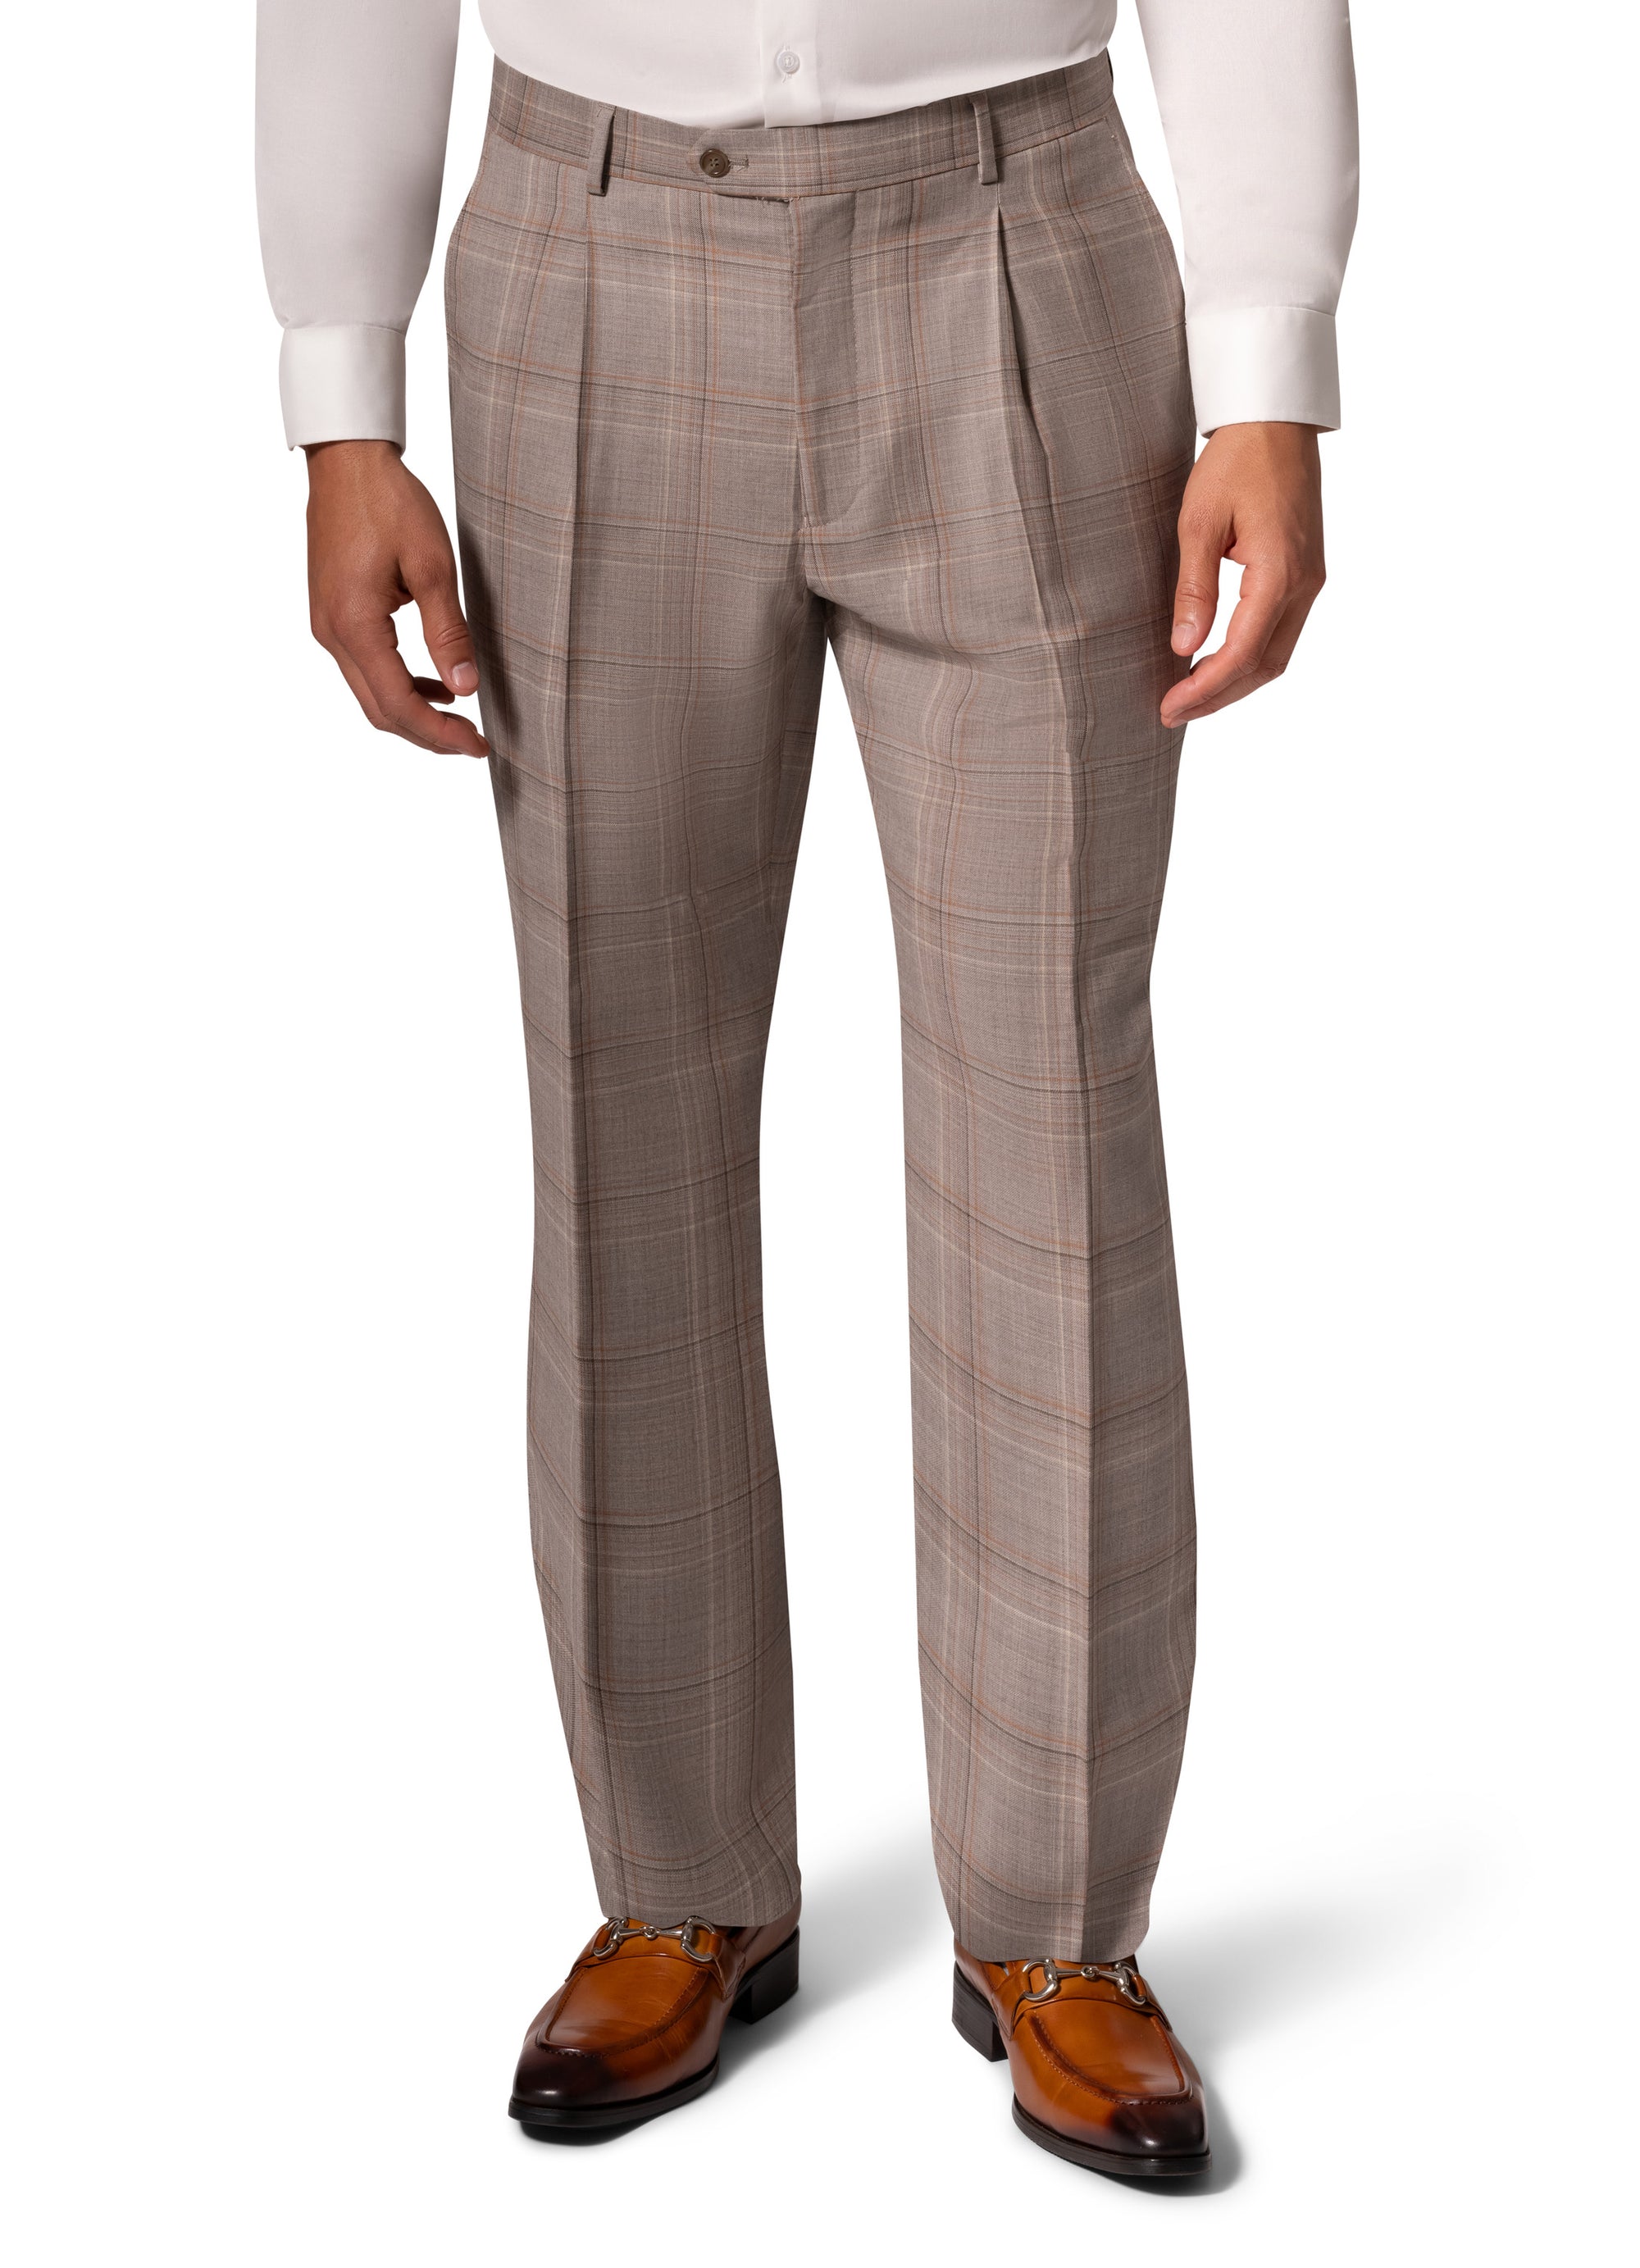 Berragamo Essex Elegant - Faille Wool Solid Suit 10005.4056